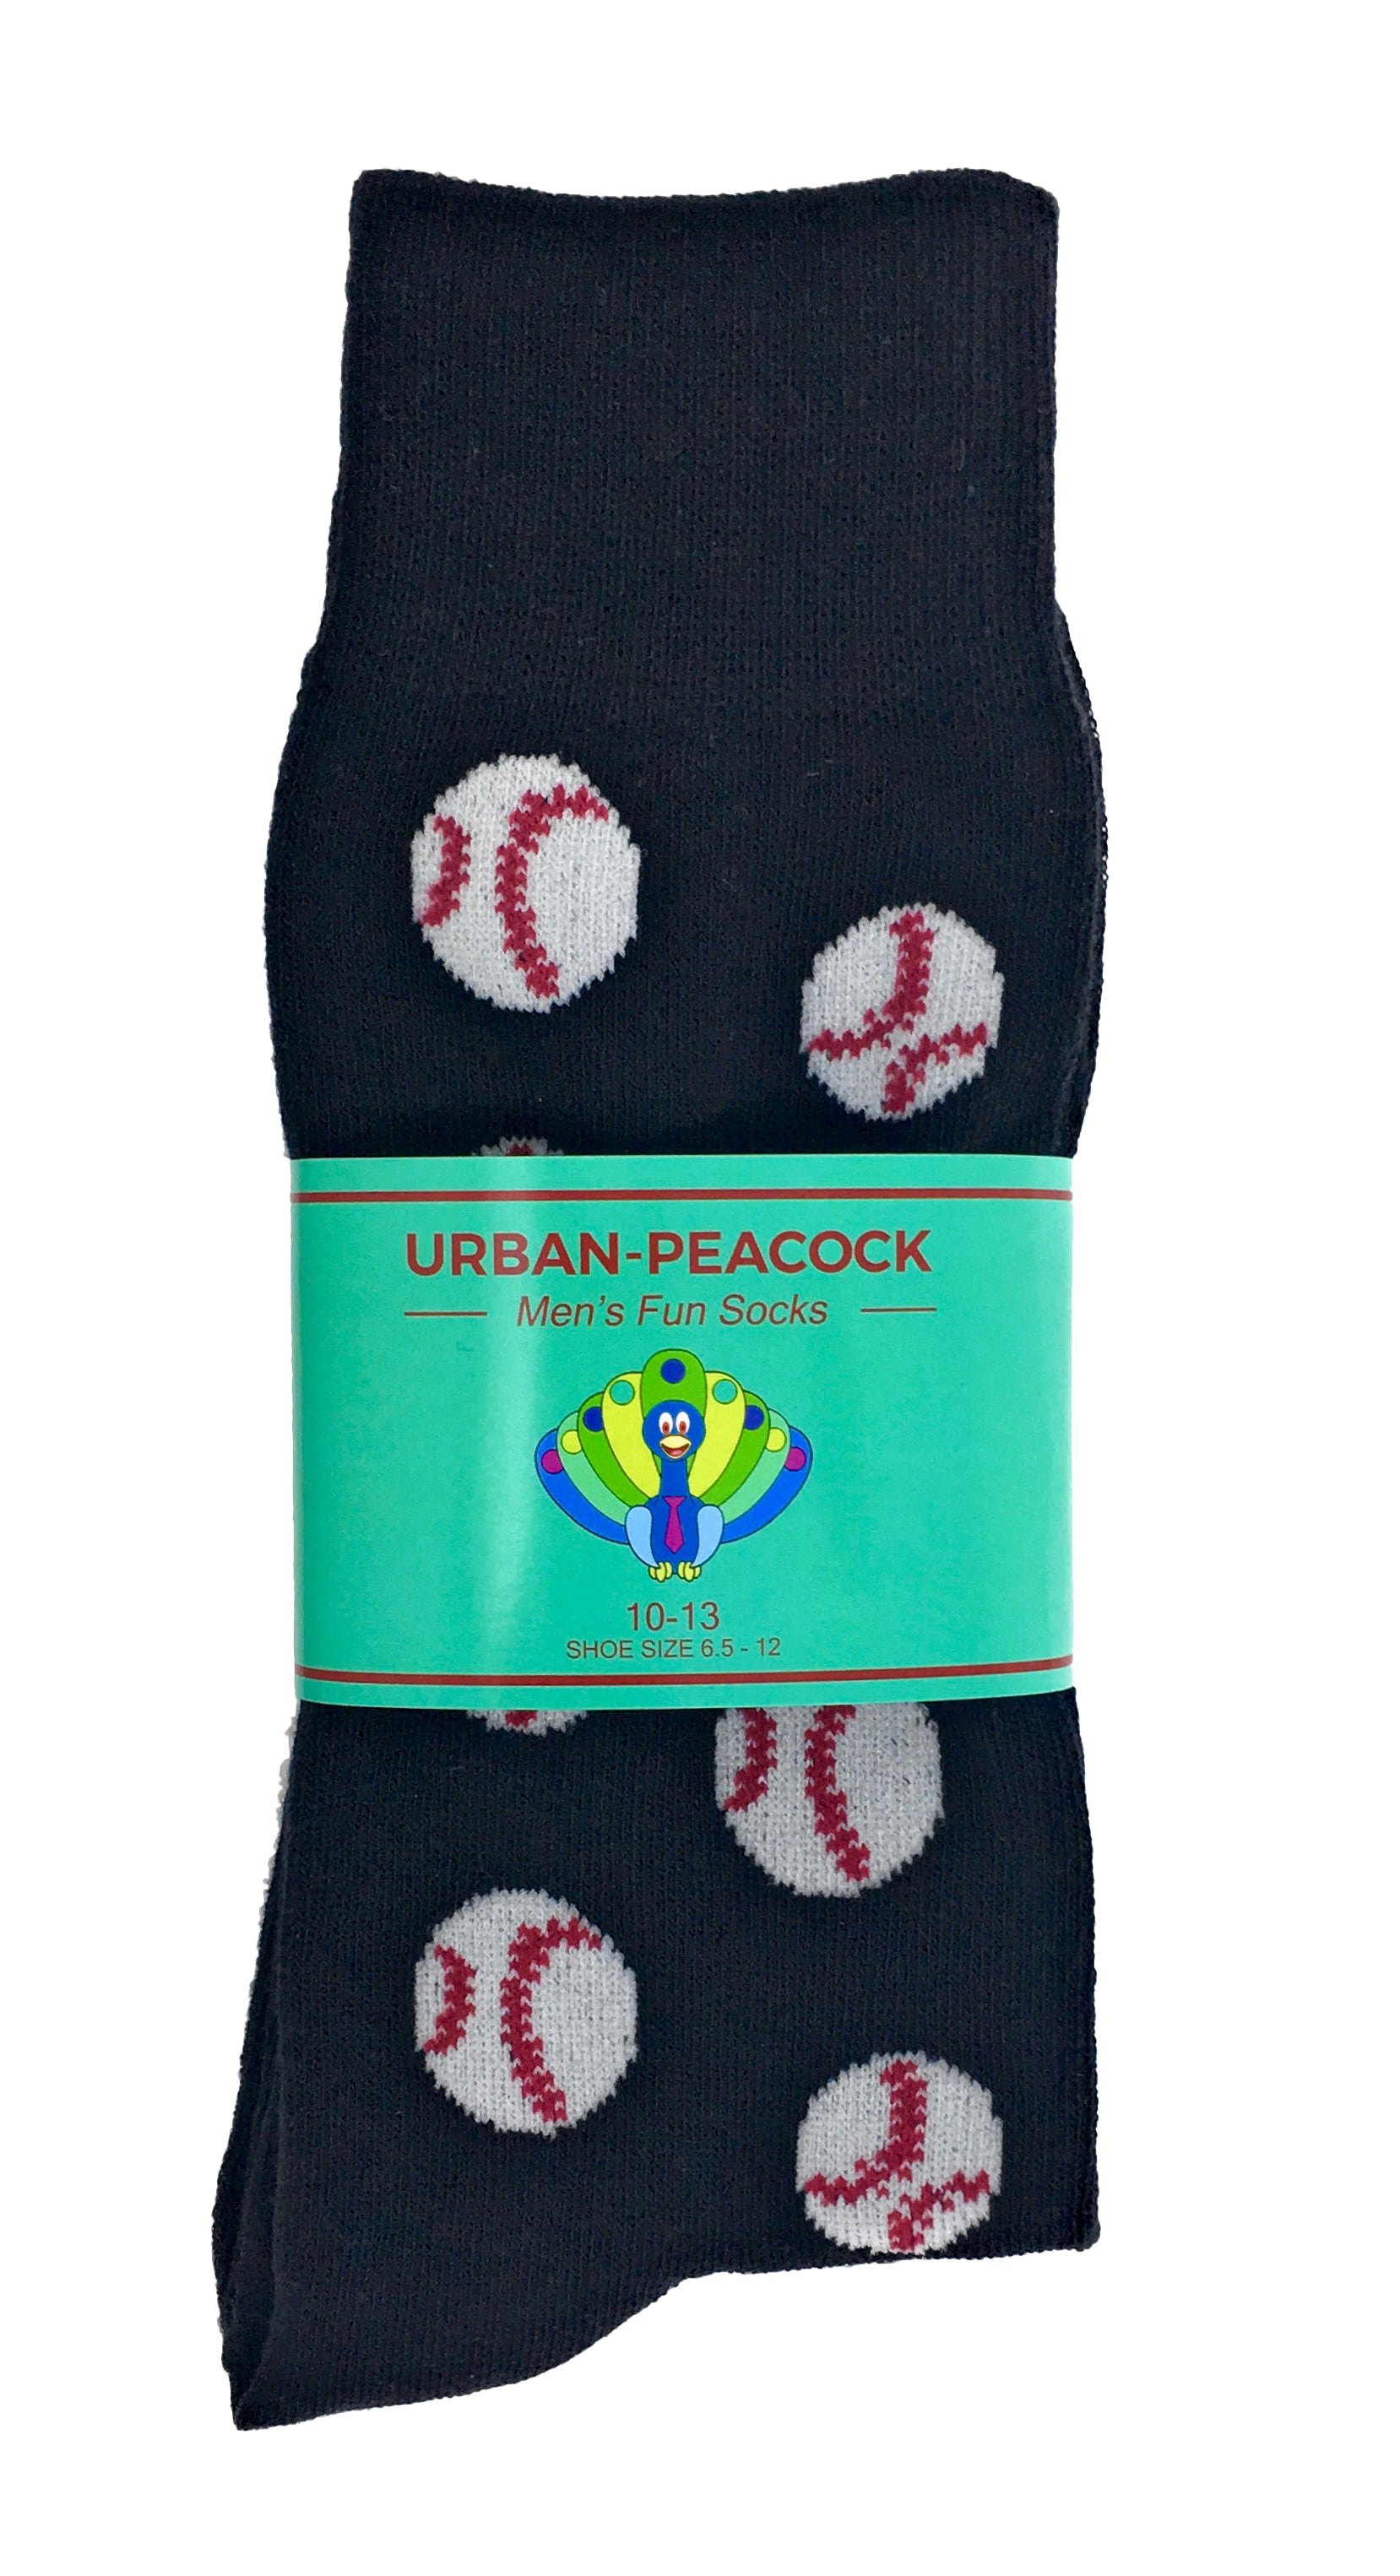 Urban-Peacock Men's Novelty Crew Socks - Baseballs Black